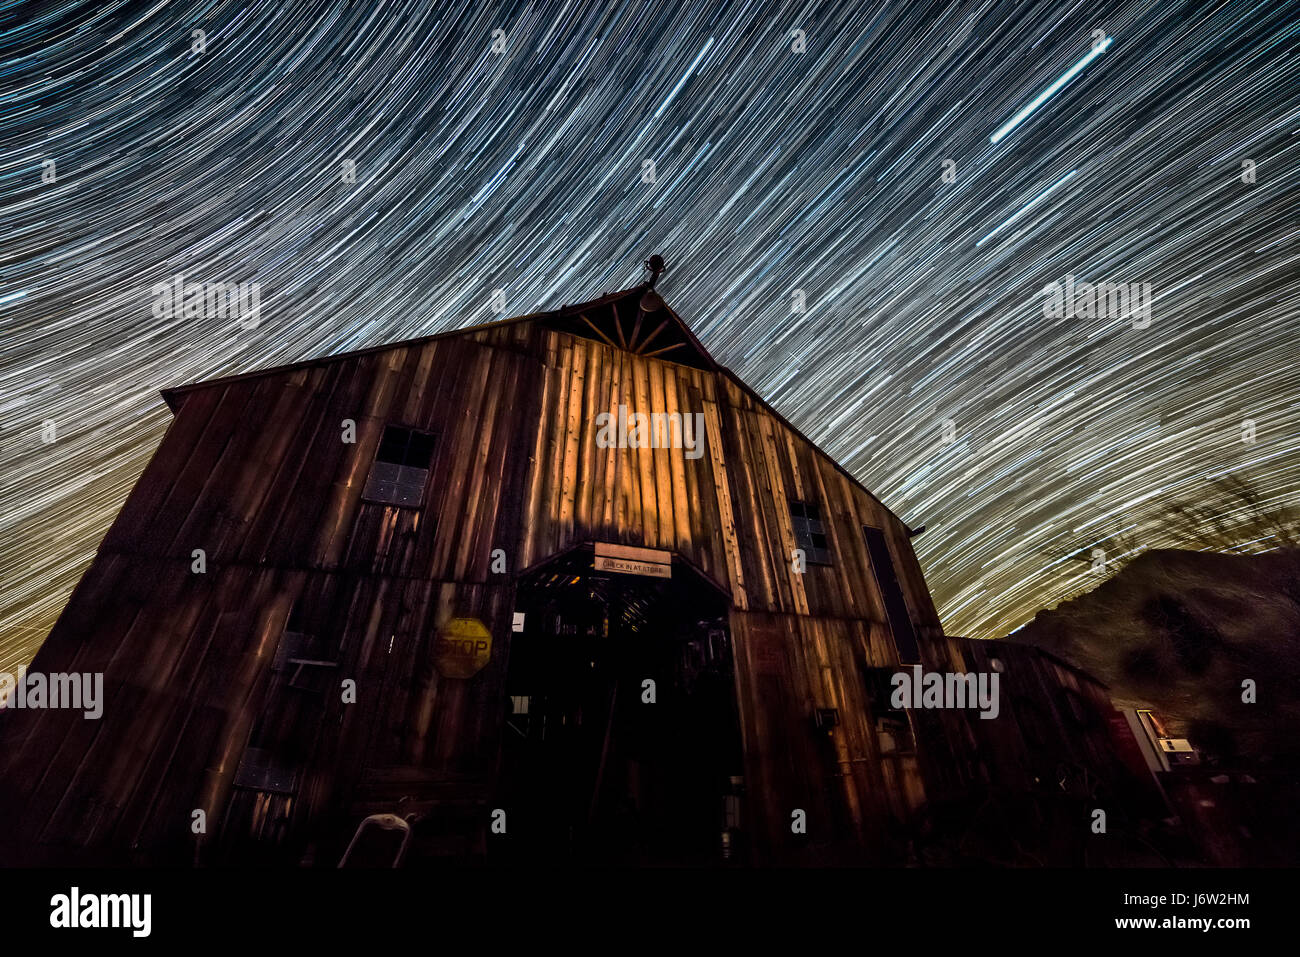 Sternspur Fotografie fängt den Pfad von fernen Sternen über einer alten Wodden Scheune, wie die Erde dreht. Stockfoto